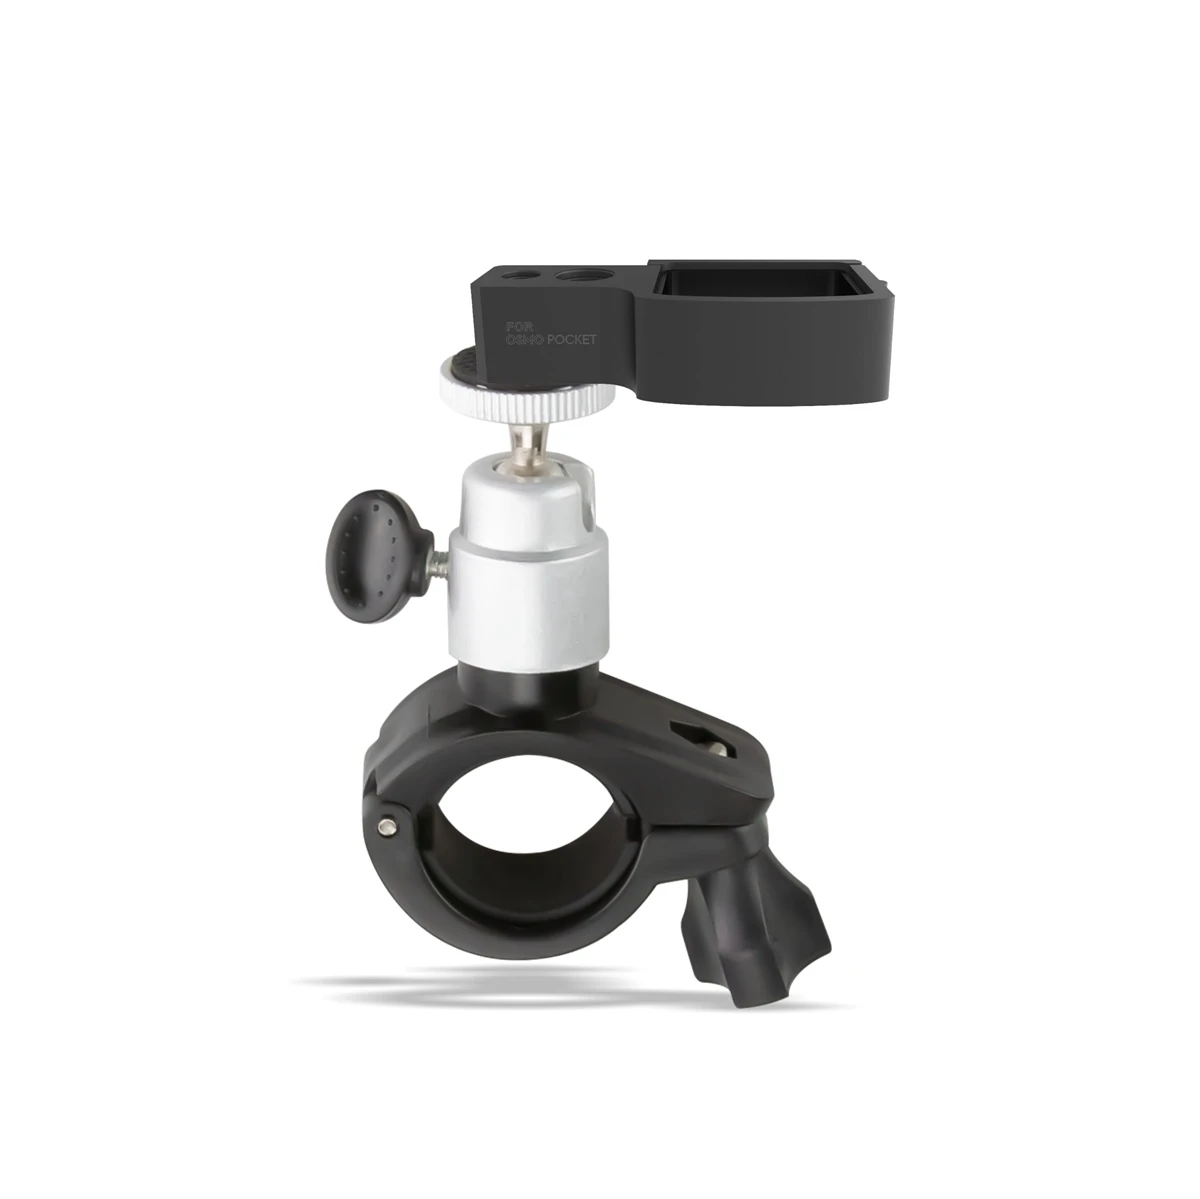 Держатель для крепления на велосипед для DJI OSMO Карманный ручной карданный Стабилизатор камеры спортивный монтажный зажим для скобы кронштейна запчасти